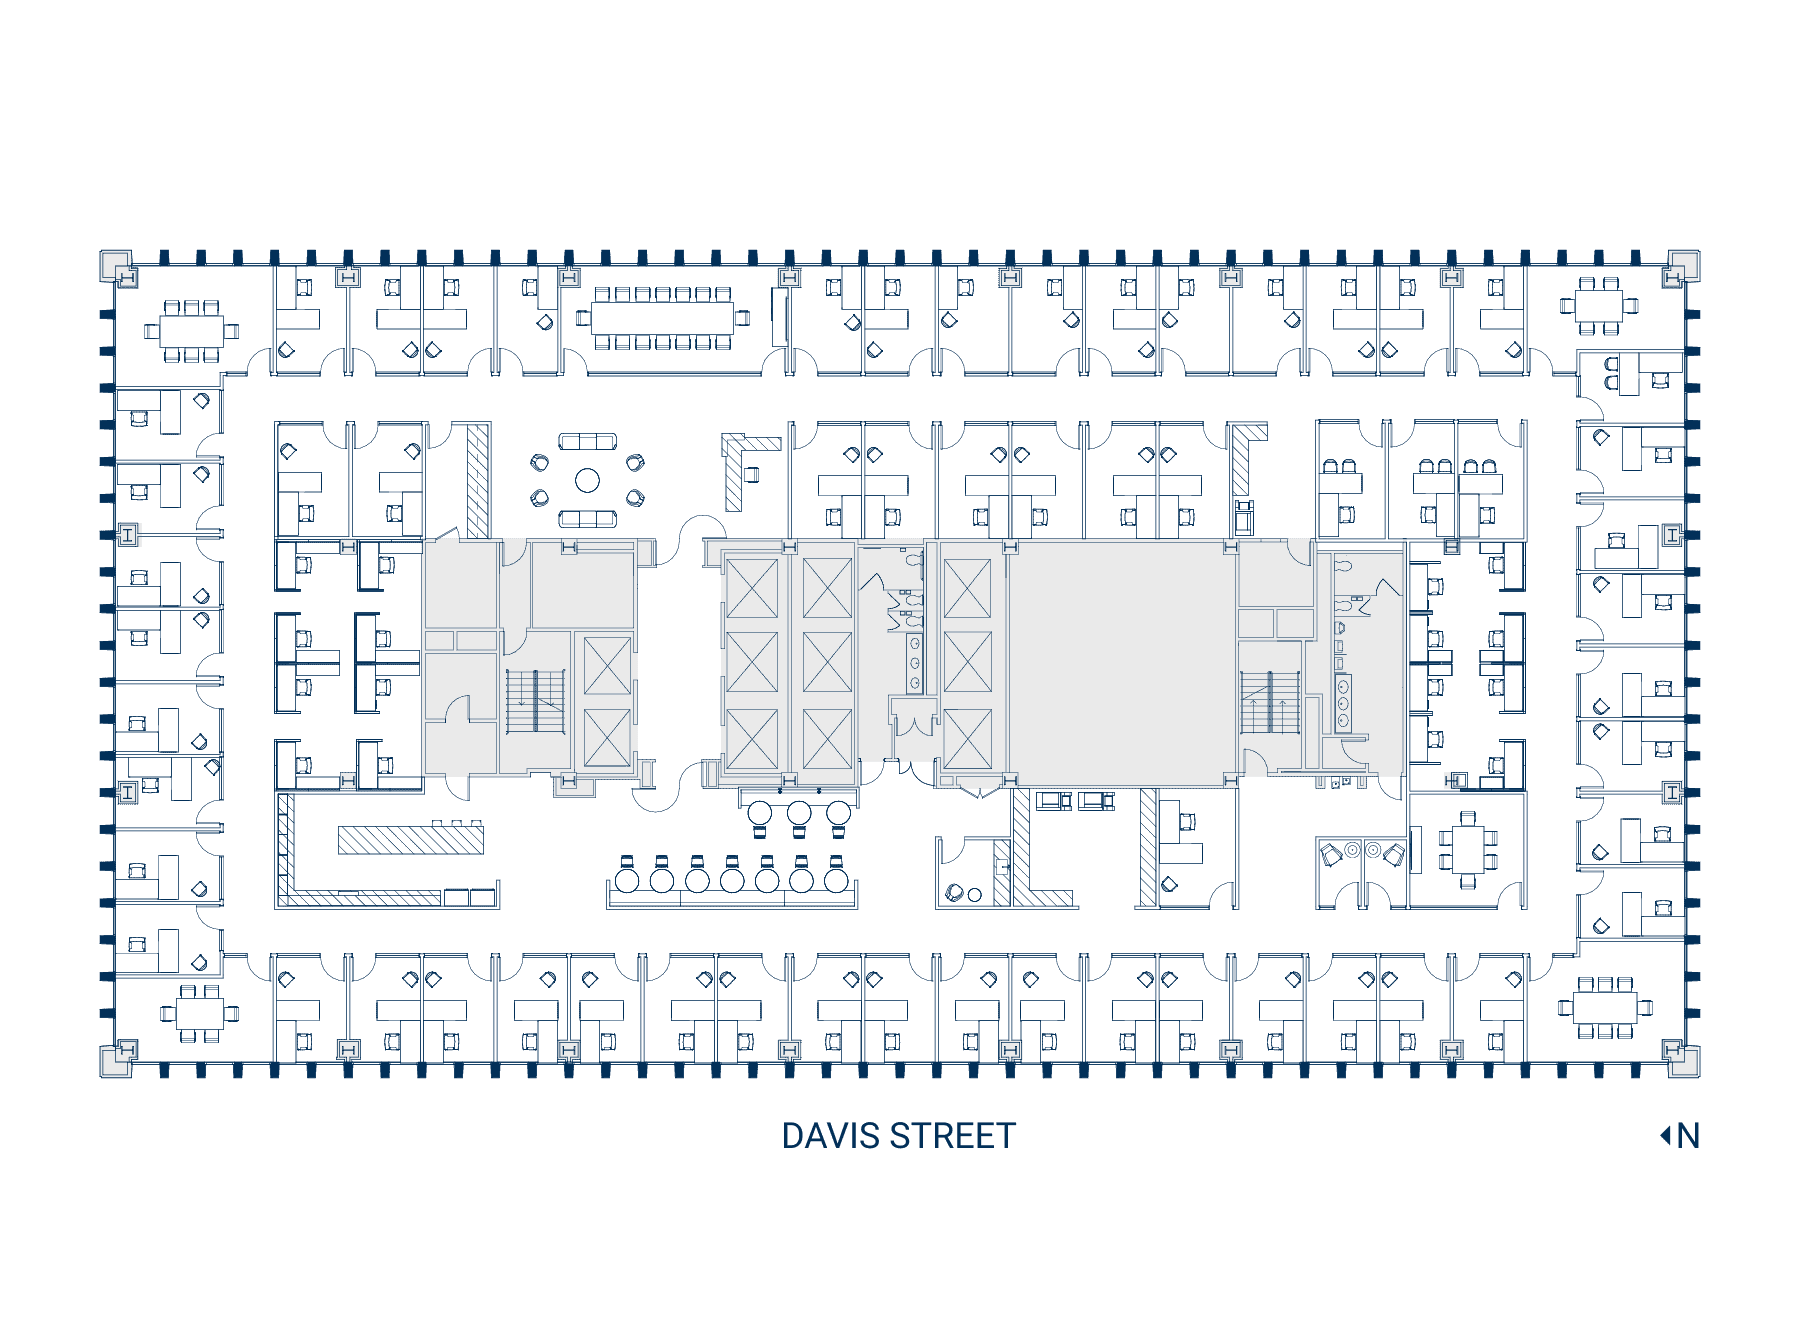 Floor 16 Suite 1600 Floor Plan - Hypothetical Private Office (Web)